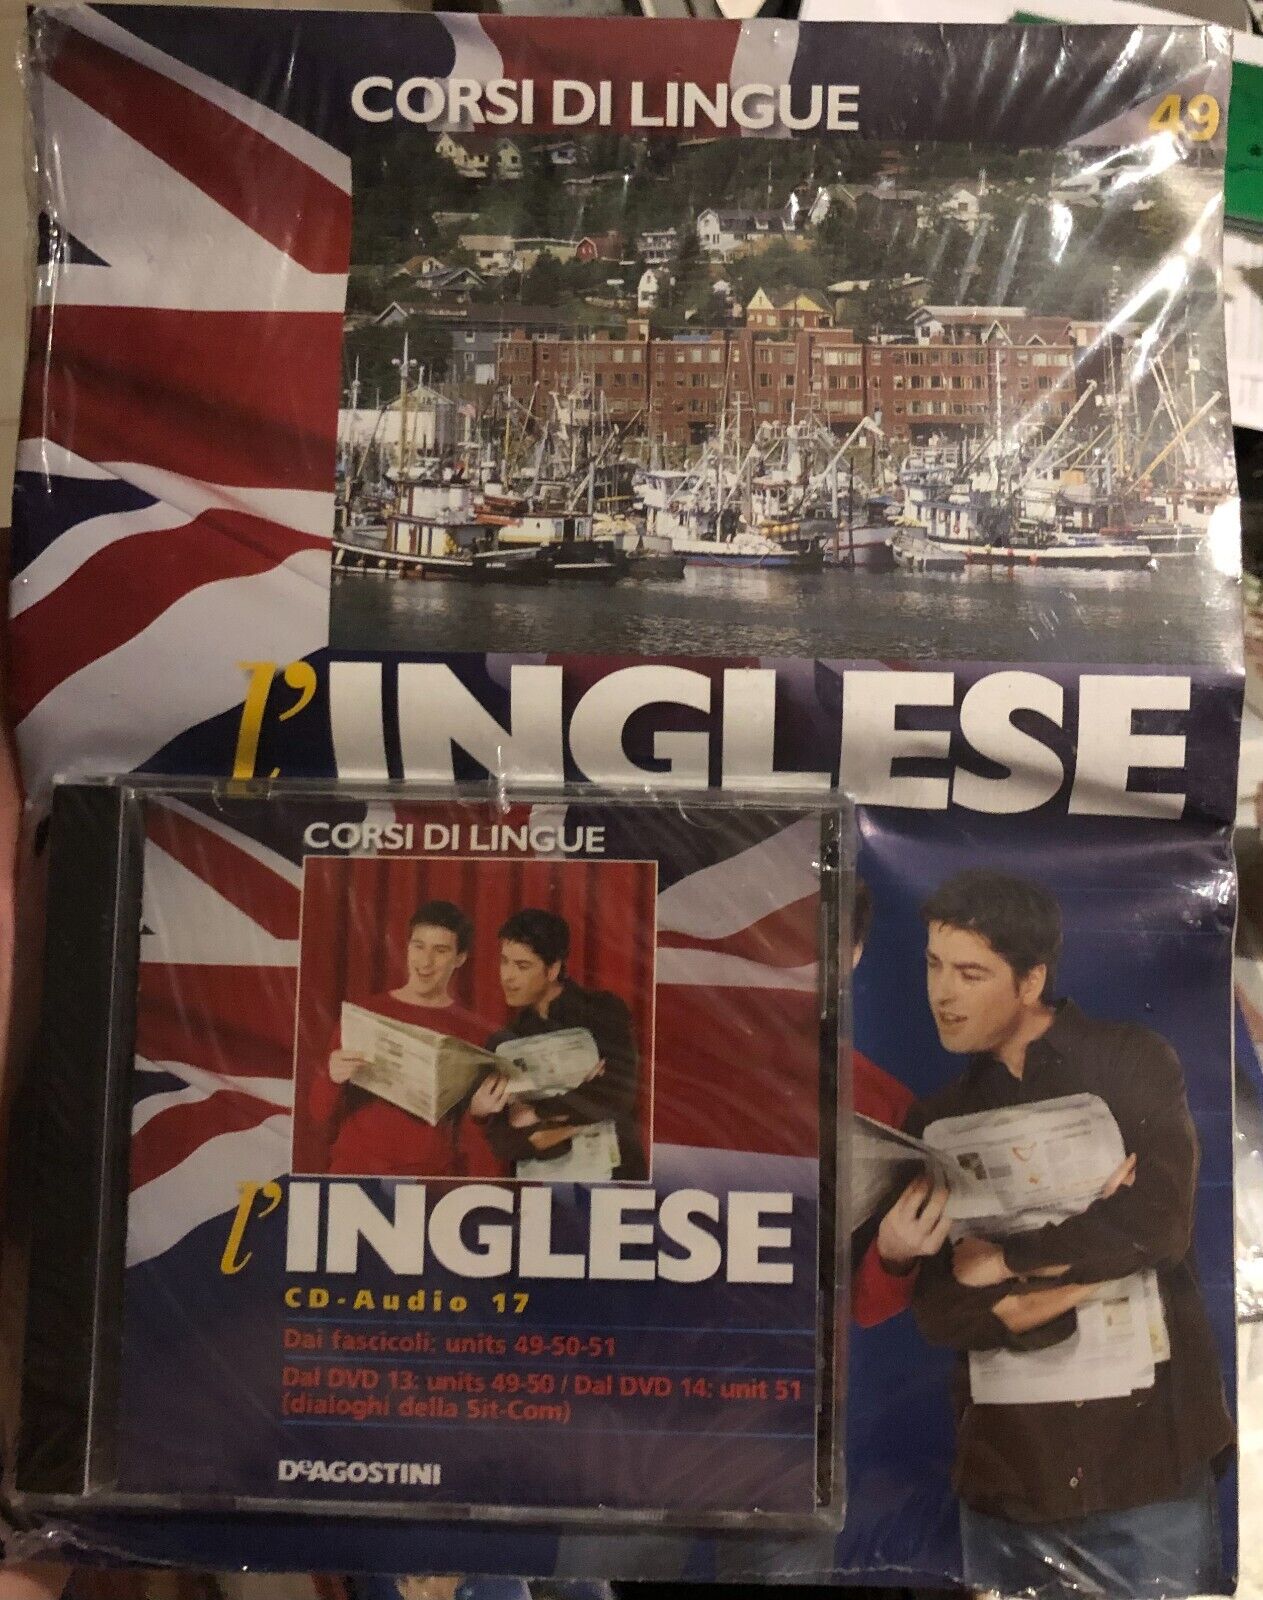 Corsi di lingue L'inglese fascicolo 49+CD di Aa.vv.,  2008,  Deagostini